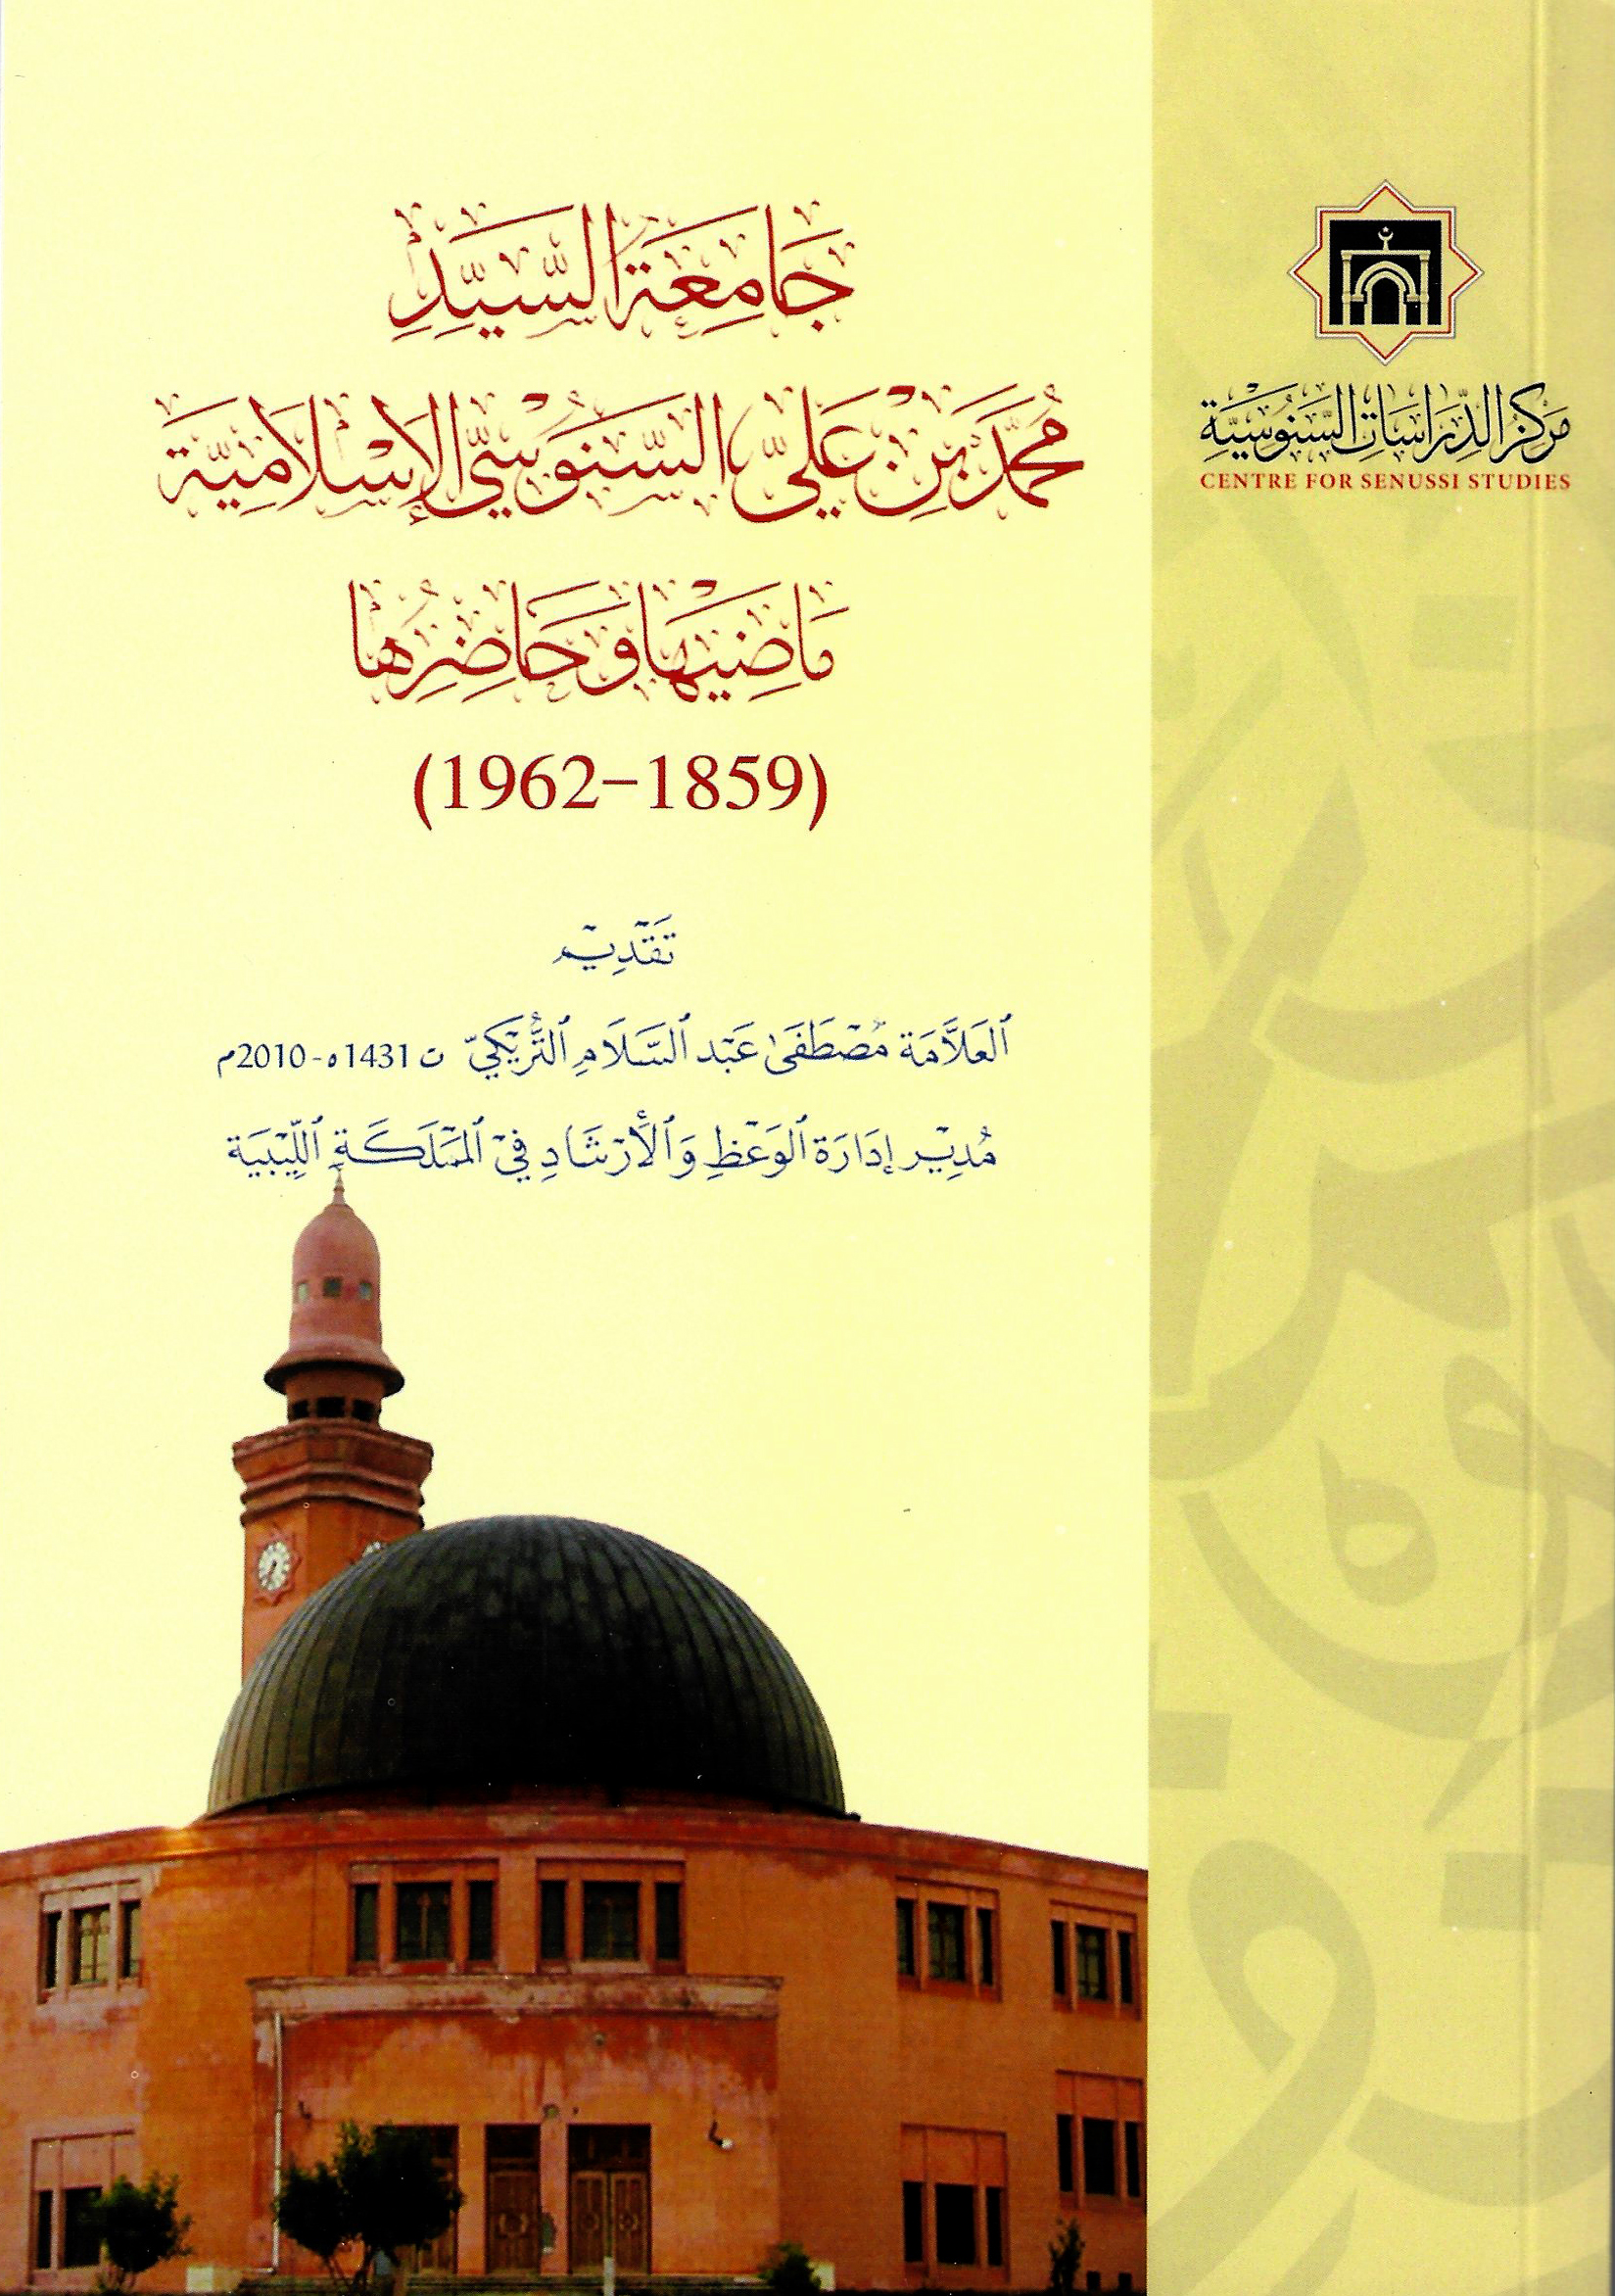 جامعة السيد محمد بن علي السنوسي الإسلامية 1859 – 1962 ماضيها وحاضرها